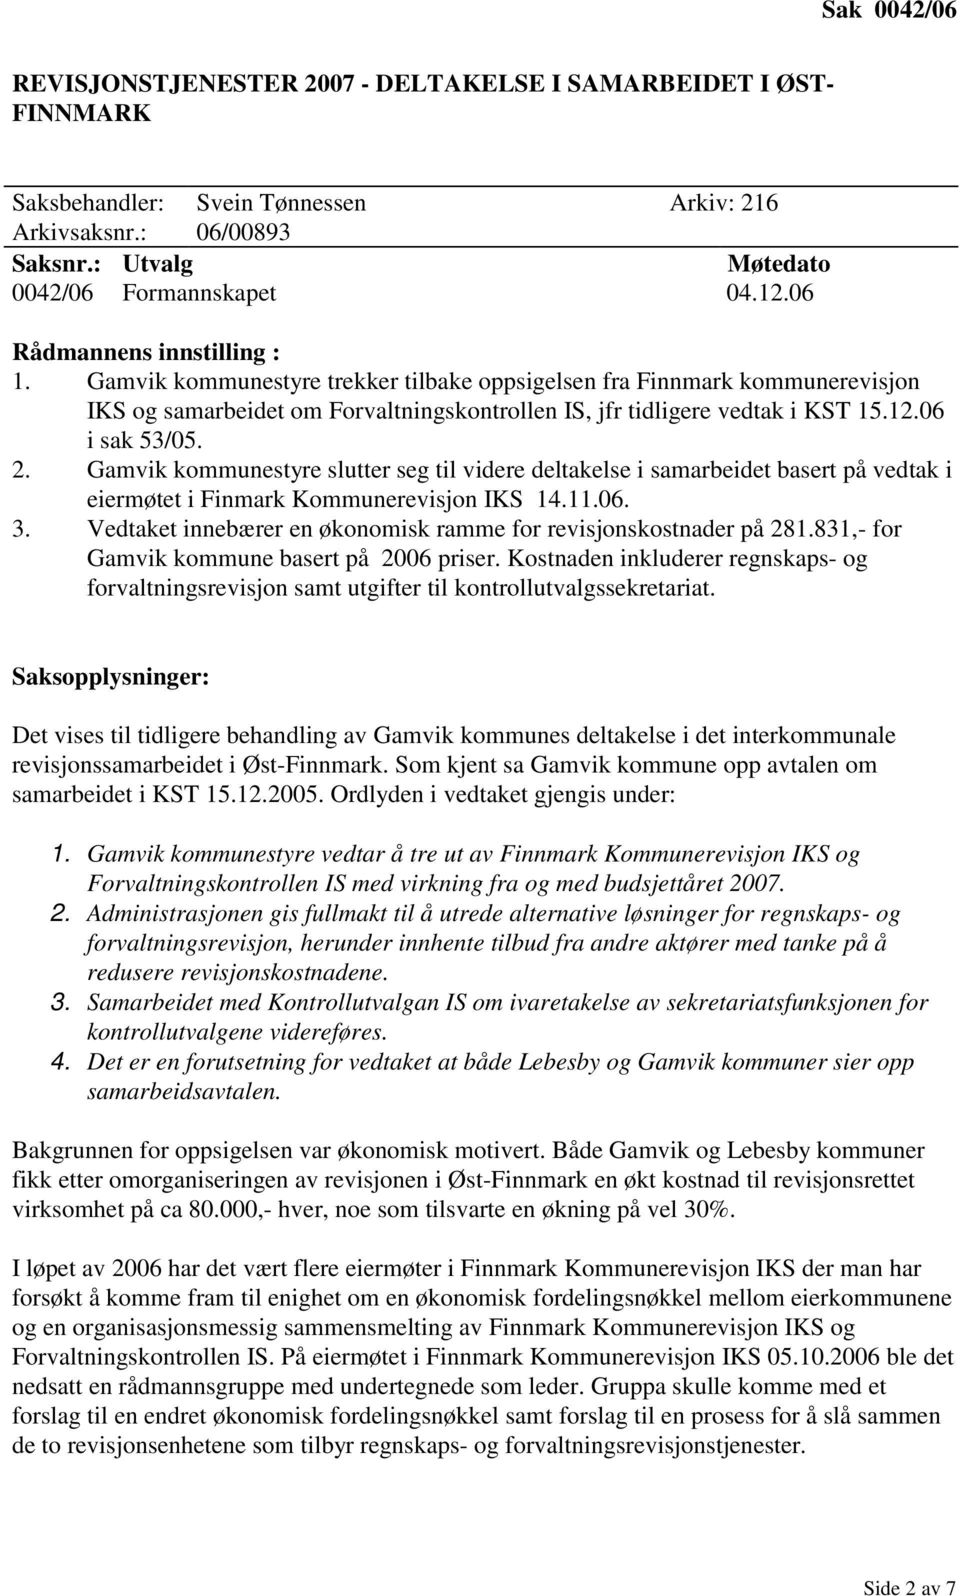 06 i sak 53/05. 2. Gamvik kommunestyre slutter seg til videre deltakelse i samarbeidet basert på vedtak i eiermøtet i Finmark Kommunerevisjon IKS 14.11.06. 3.